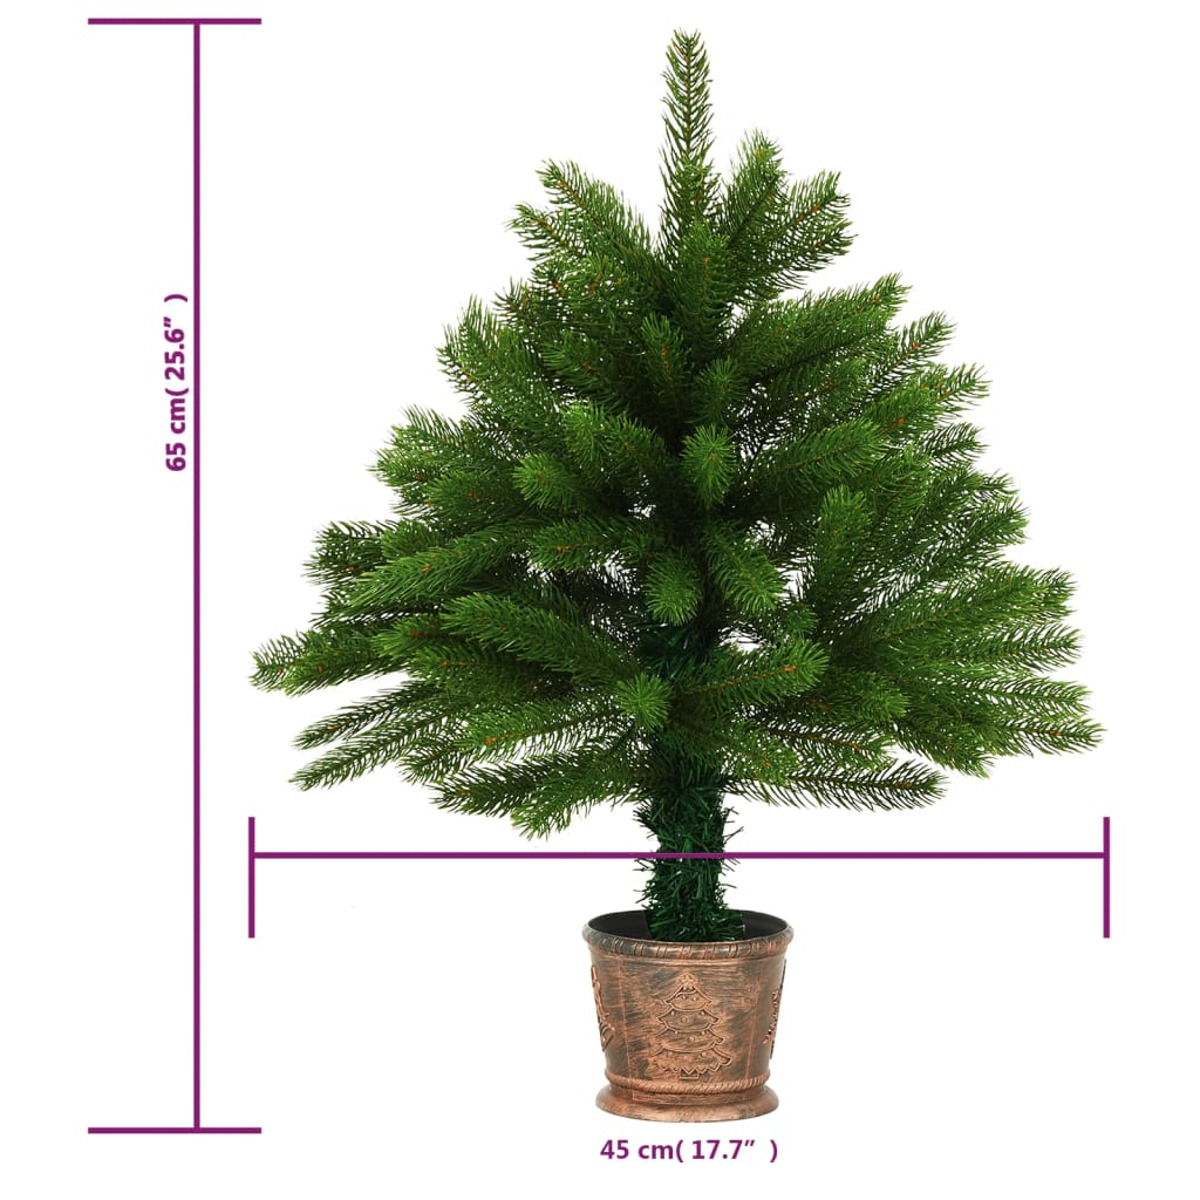 VIDAXL 3077551 Weihnachtsbaum